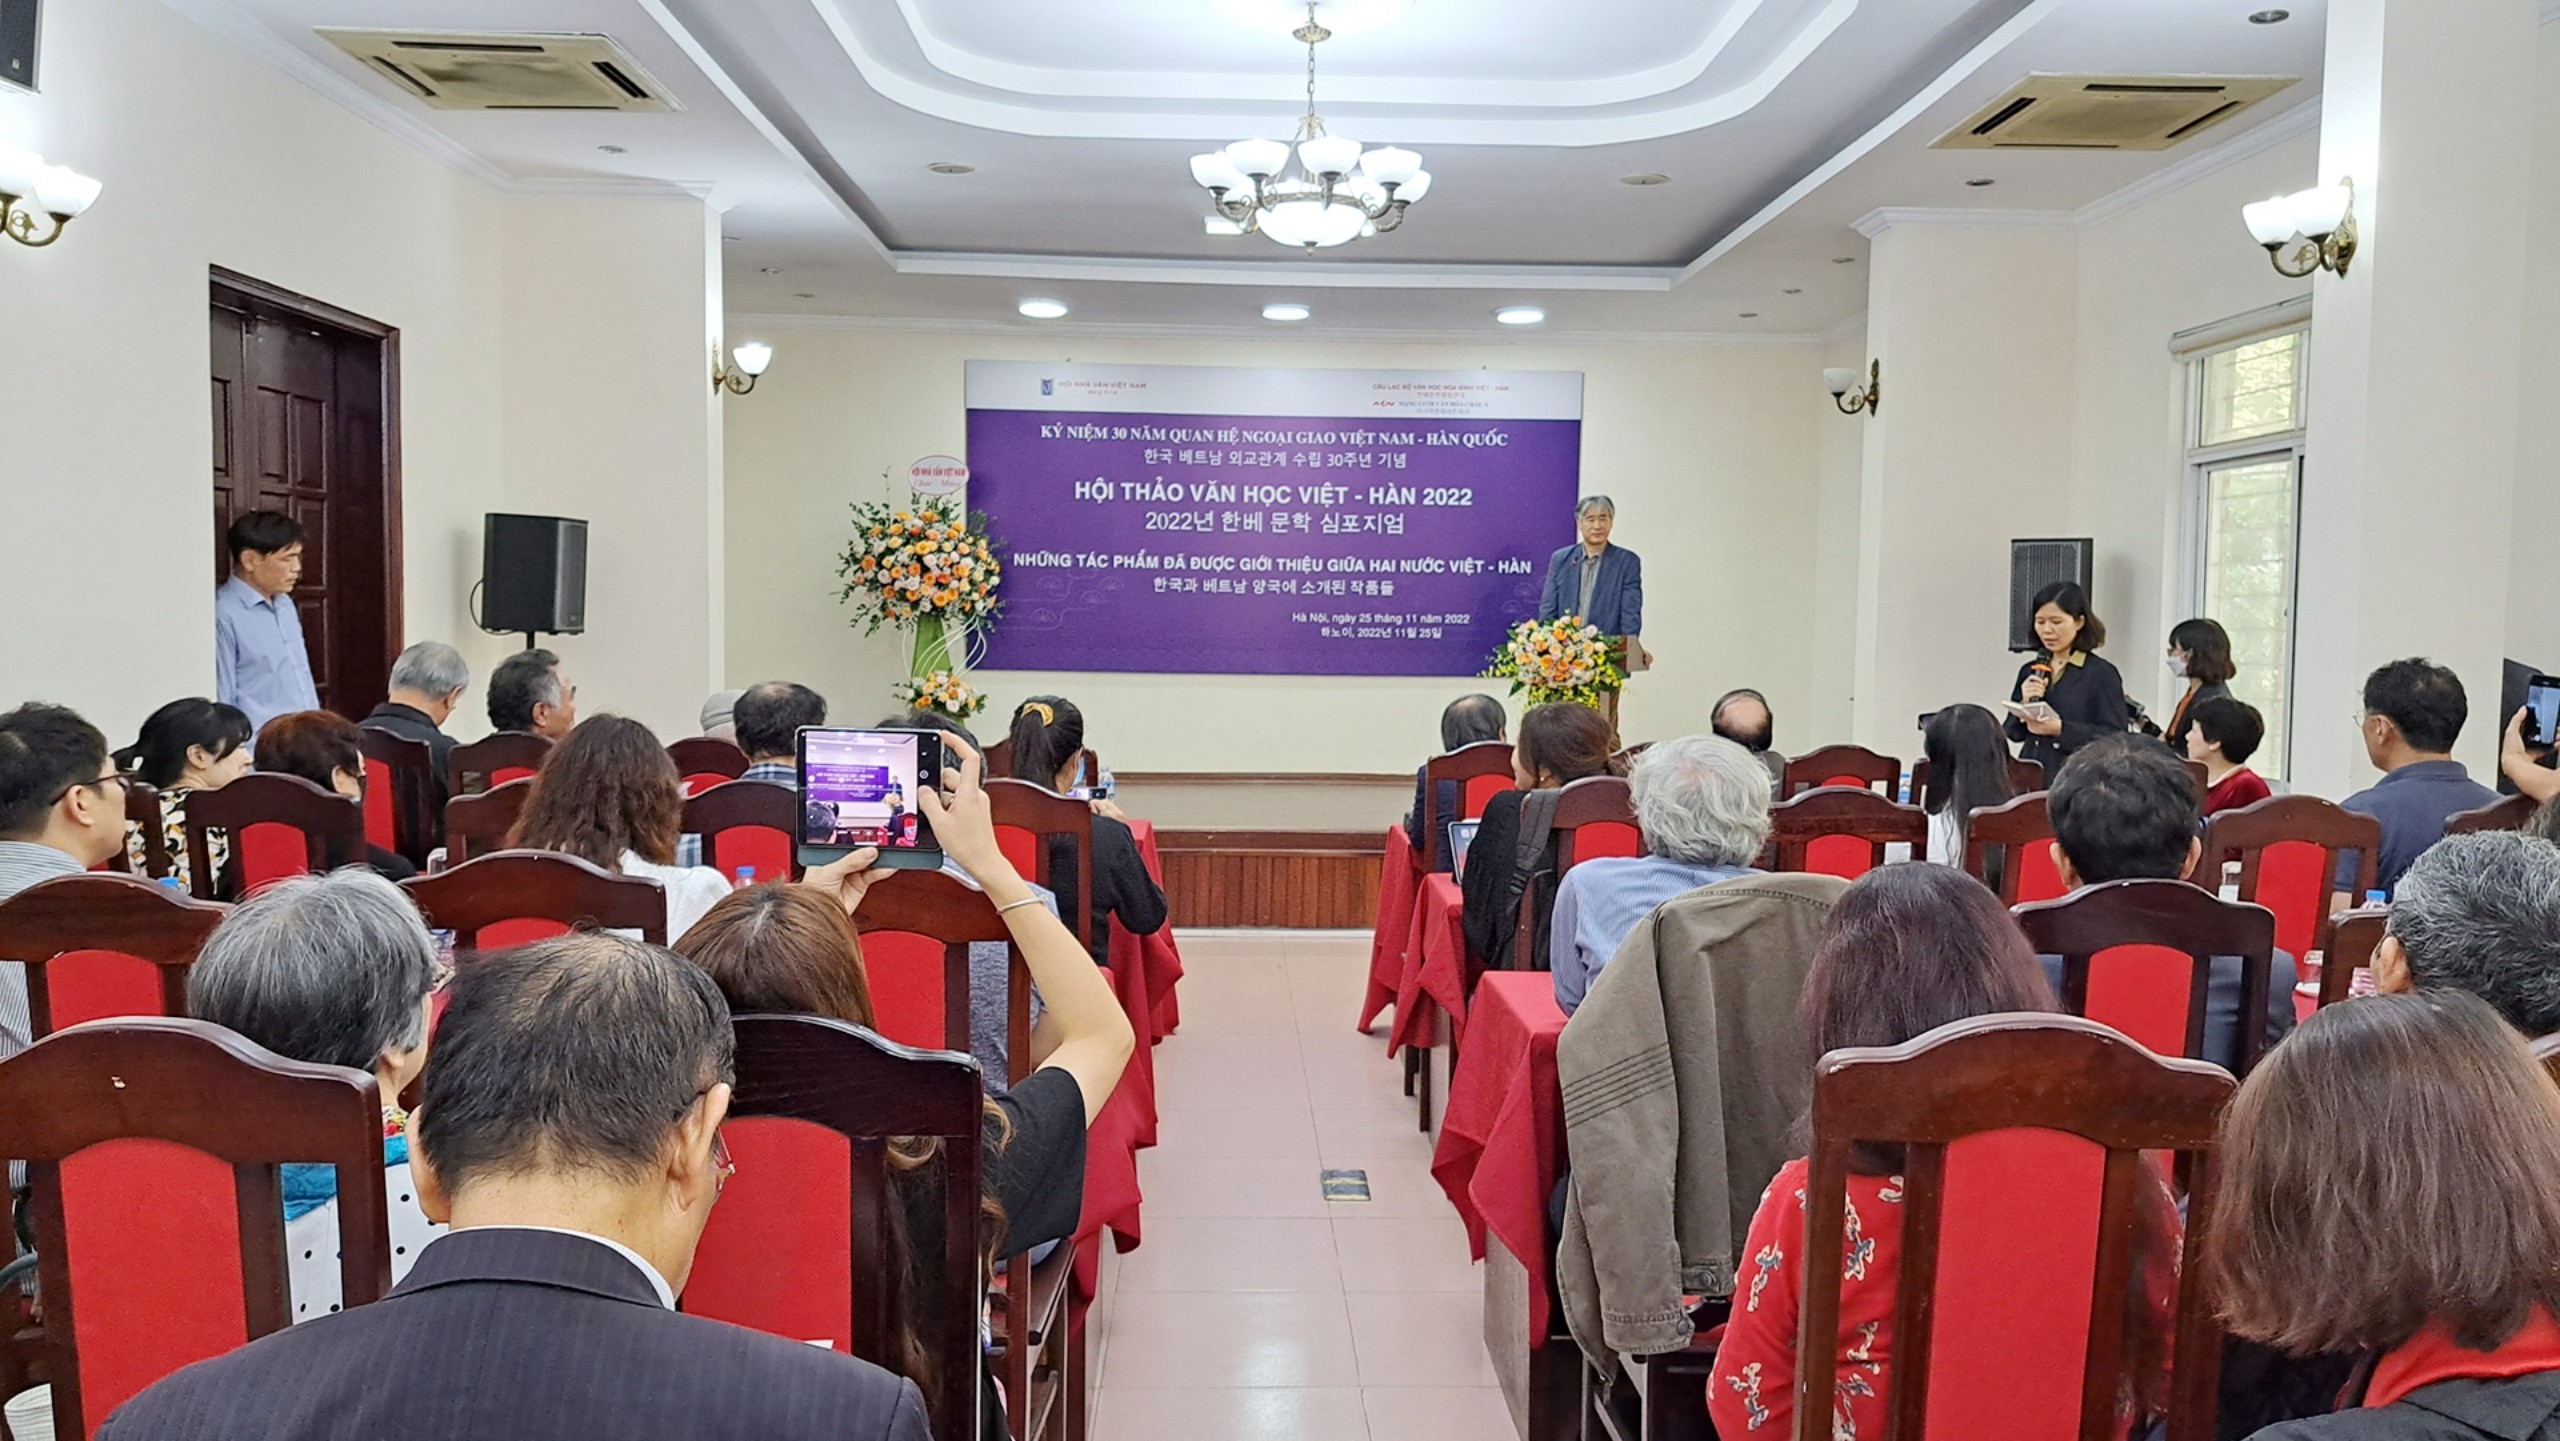 Cần bước ngoặt lớn để văn học Việt Nam được hiện diện nhiều hơn tại Hàn Quốc - 1